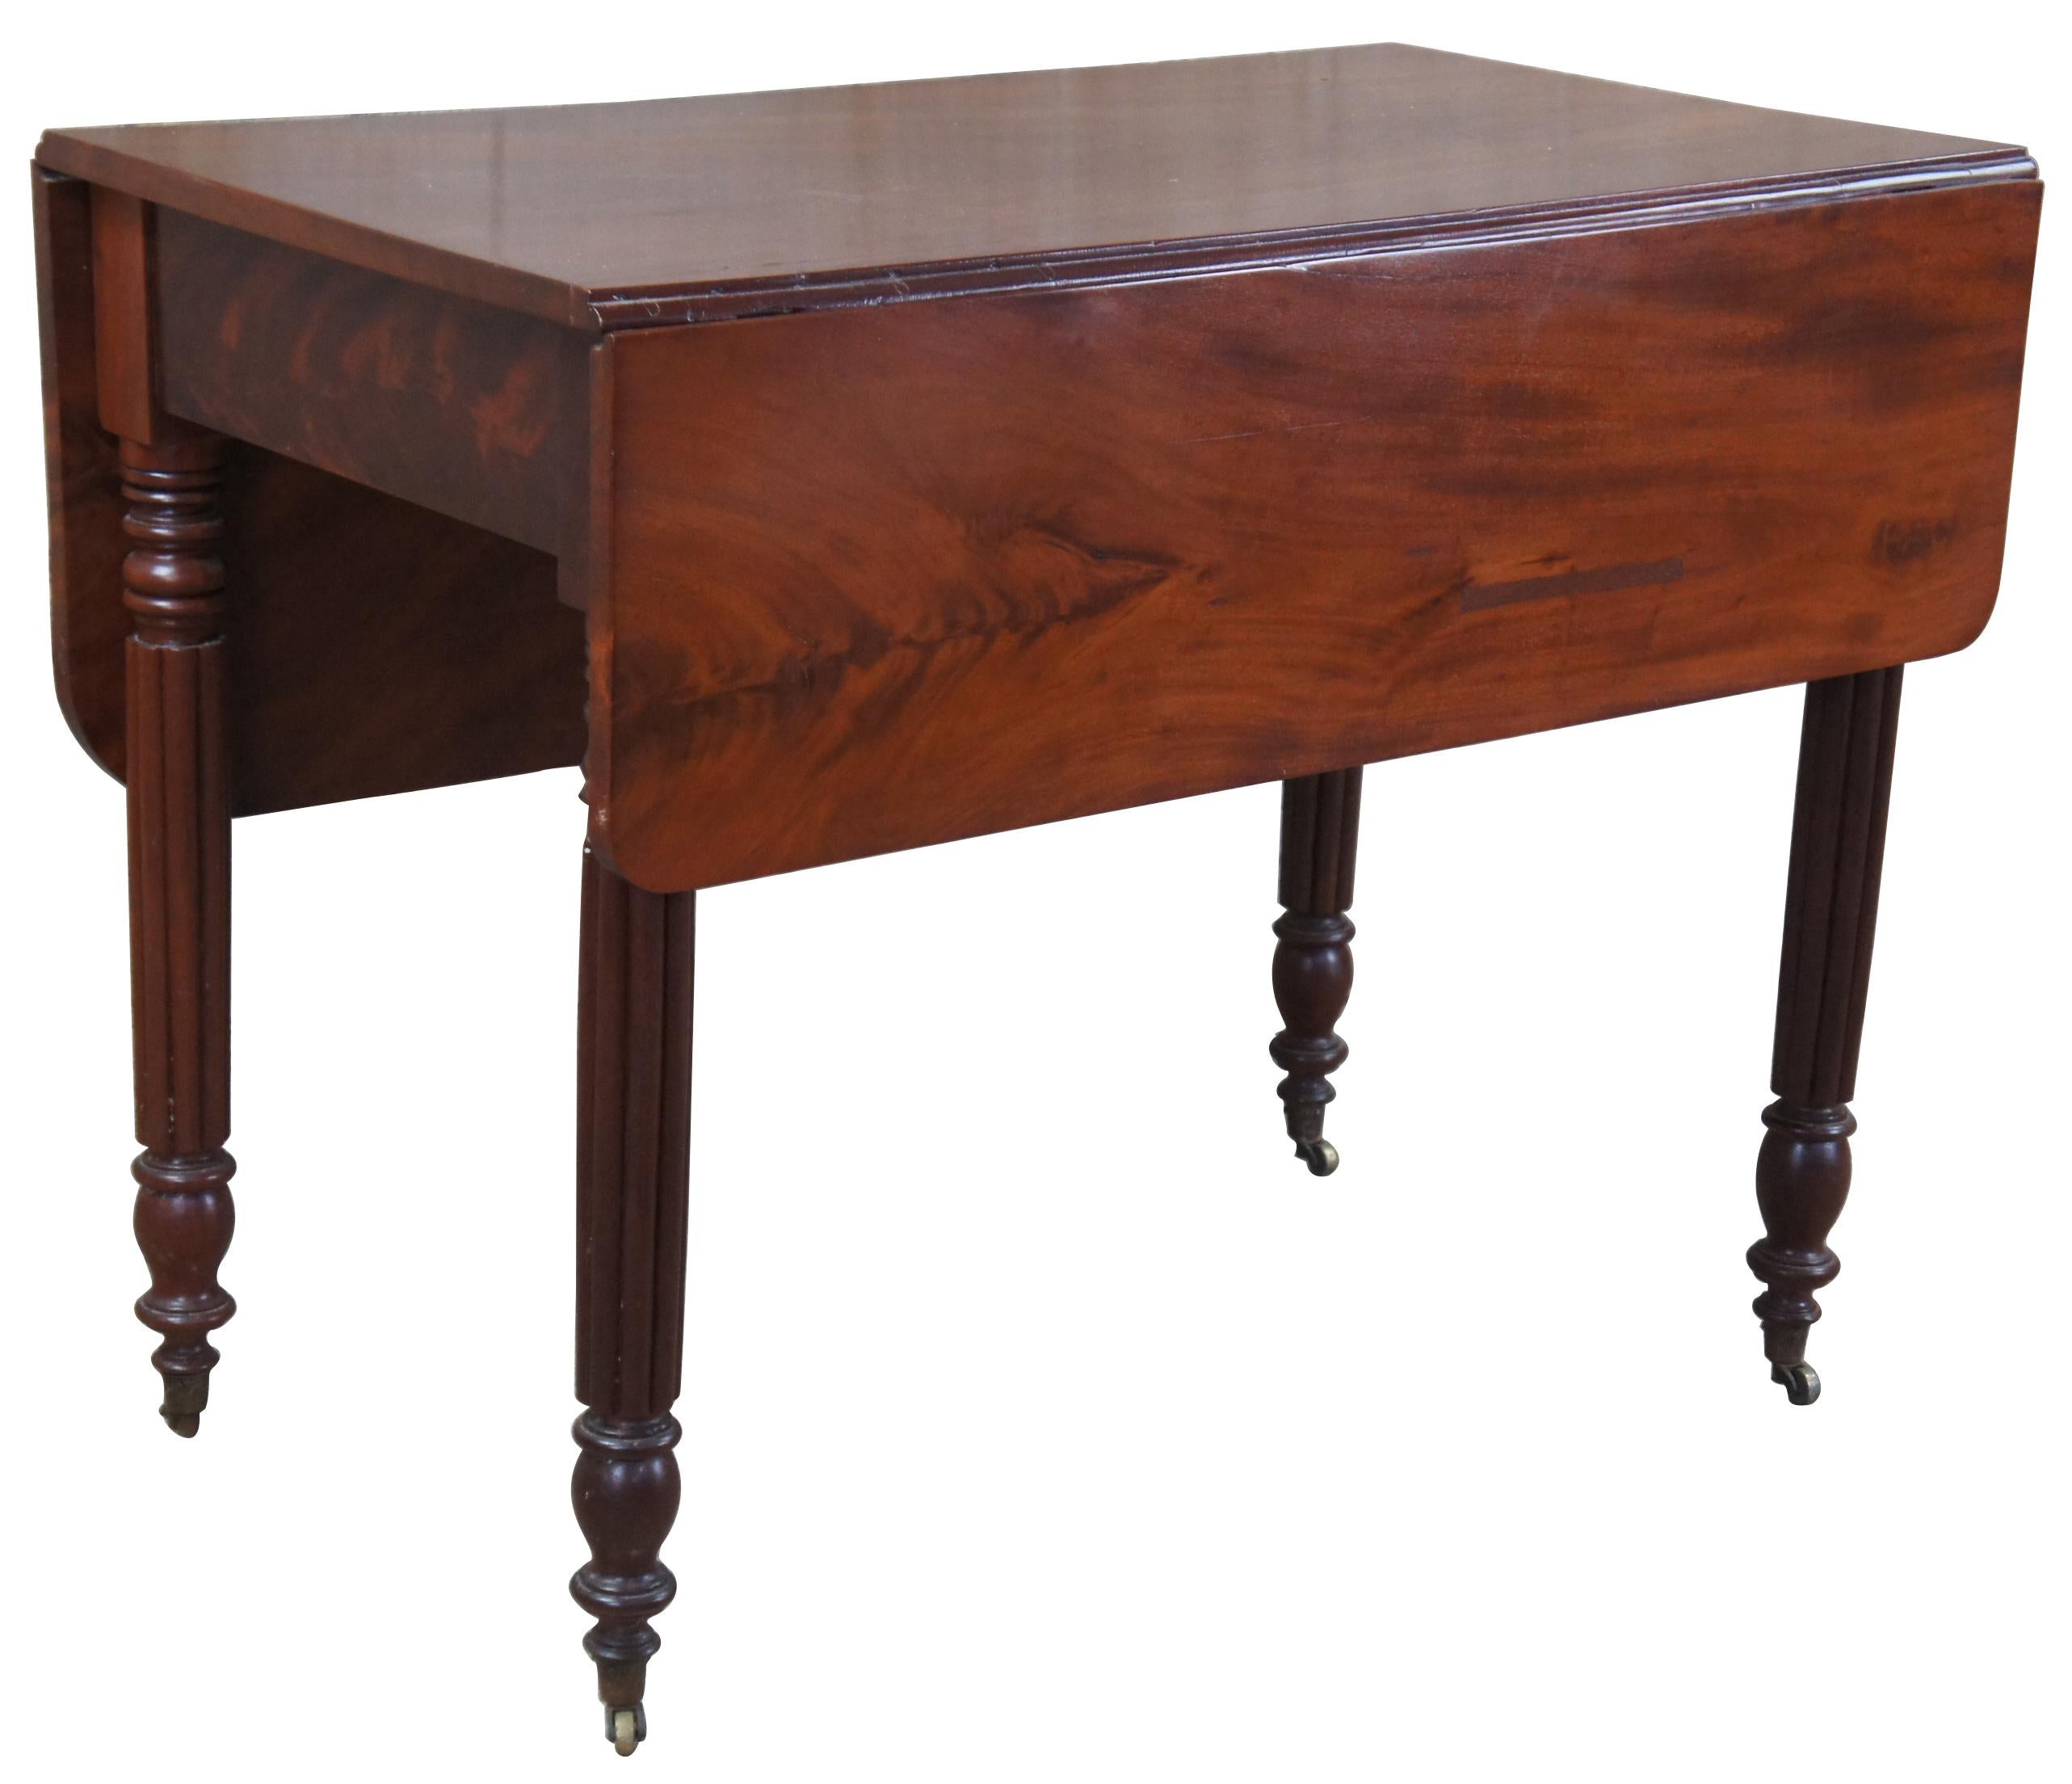 Tisch im amerikanischen Empire-Stil von Weber Furniture aus Chicago, Illinois. Handgefertigt aus geflammtem Mahagoni. Mit einem einzigartigen Klappblatt mit zwei unterschiedlich großen Blättern, geriffelten Beinen und Pfeilfüßen auf zierlichen